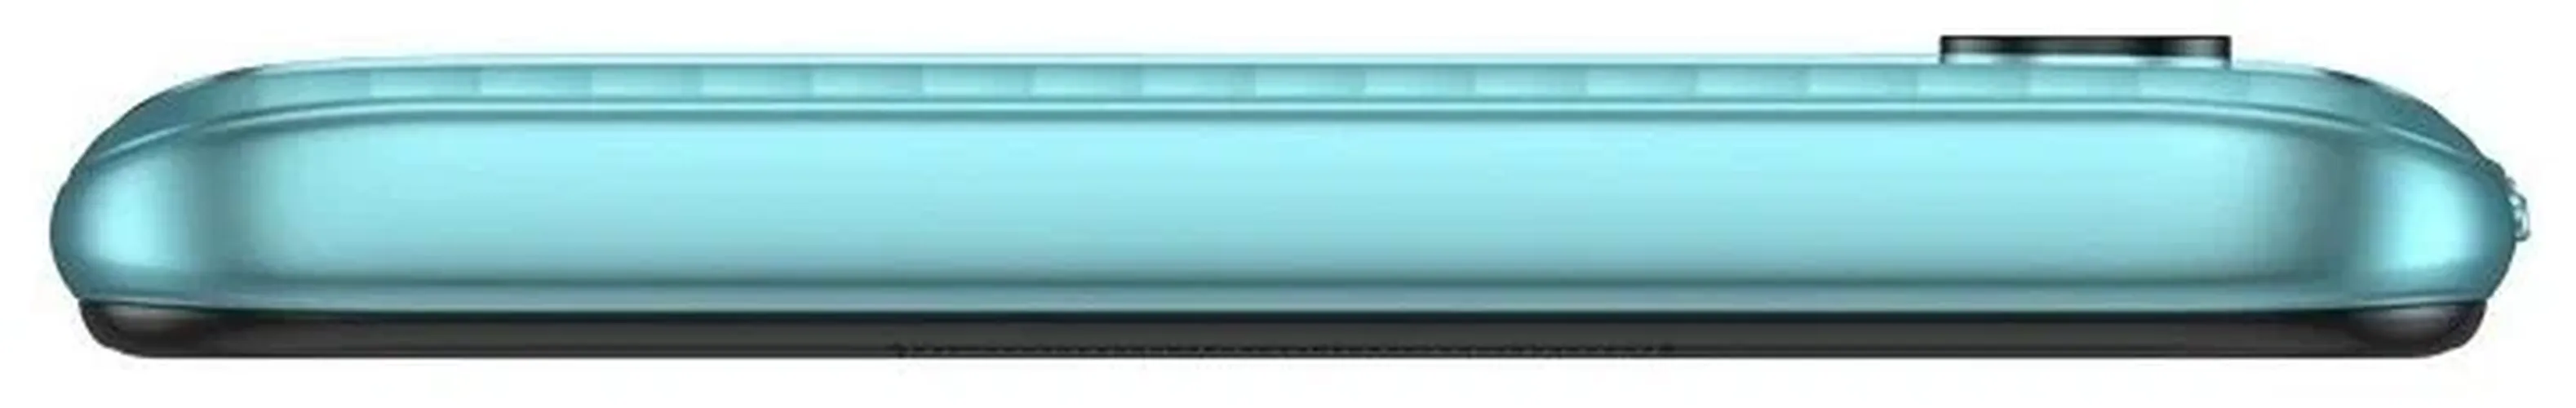 Смартфон Tecno Spark 8P, Антлантическй синий, 4/64 GB, arzon